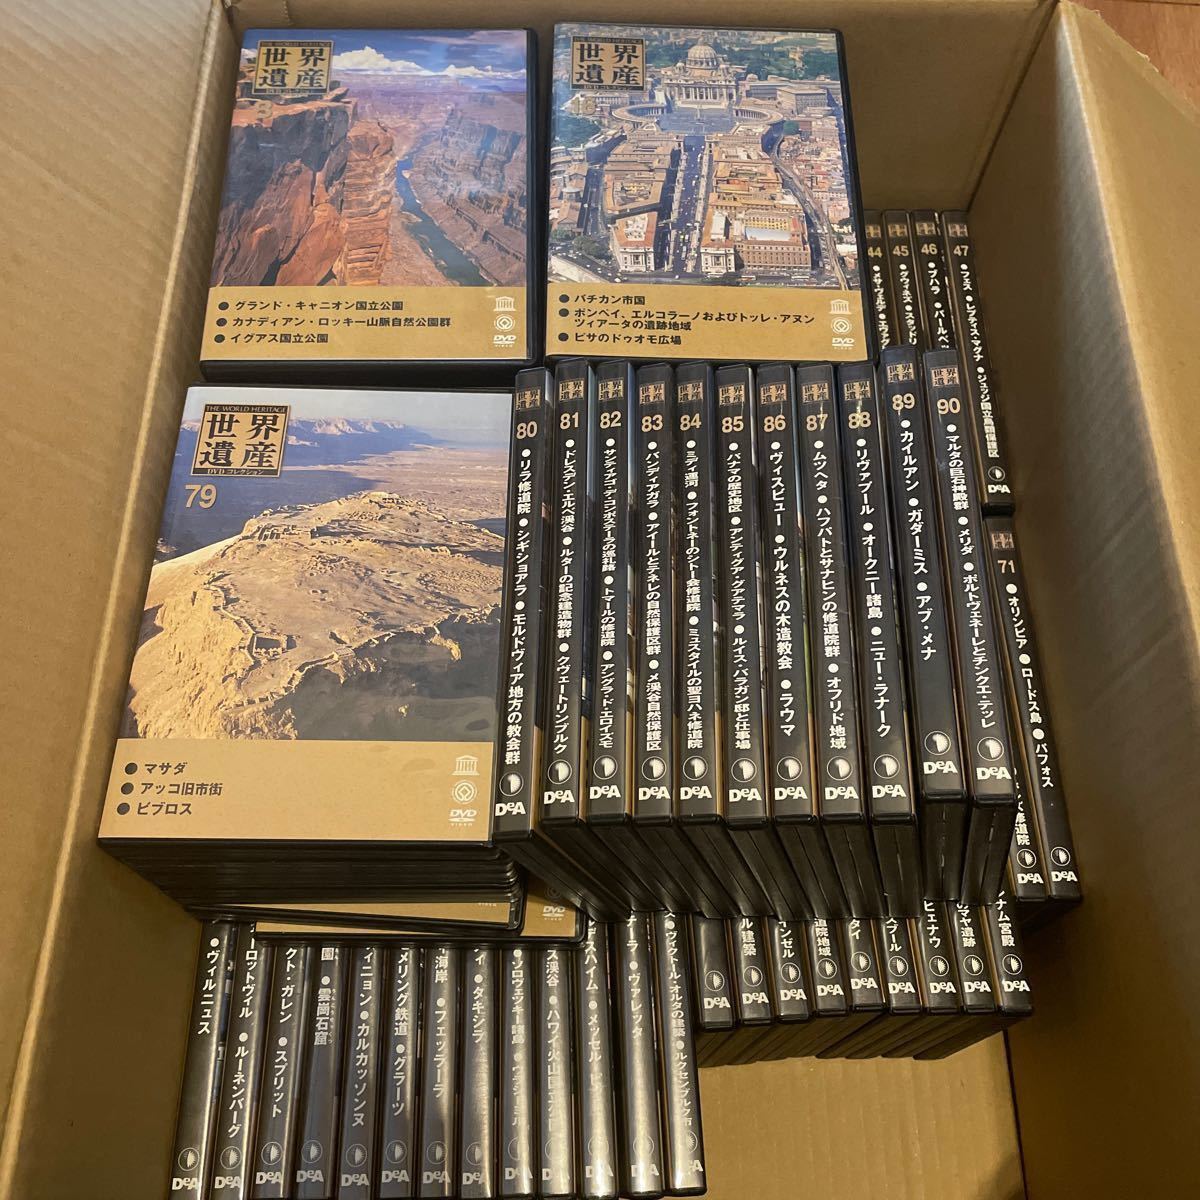 【DVDのみ】世界遺産 DVDコレクション デアゴスティーニ全90巻セット